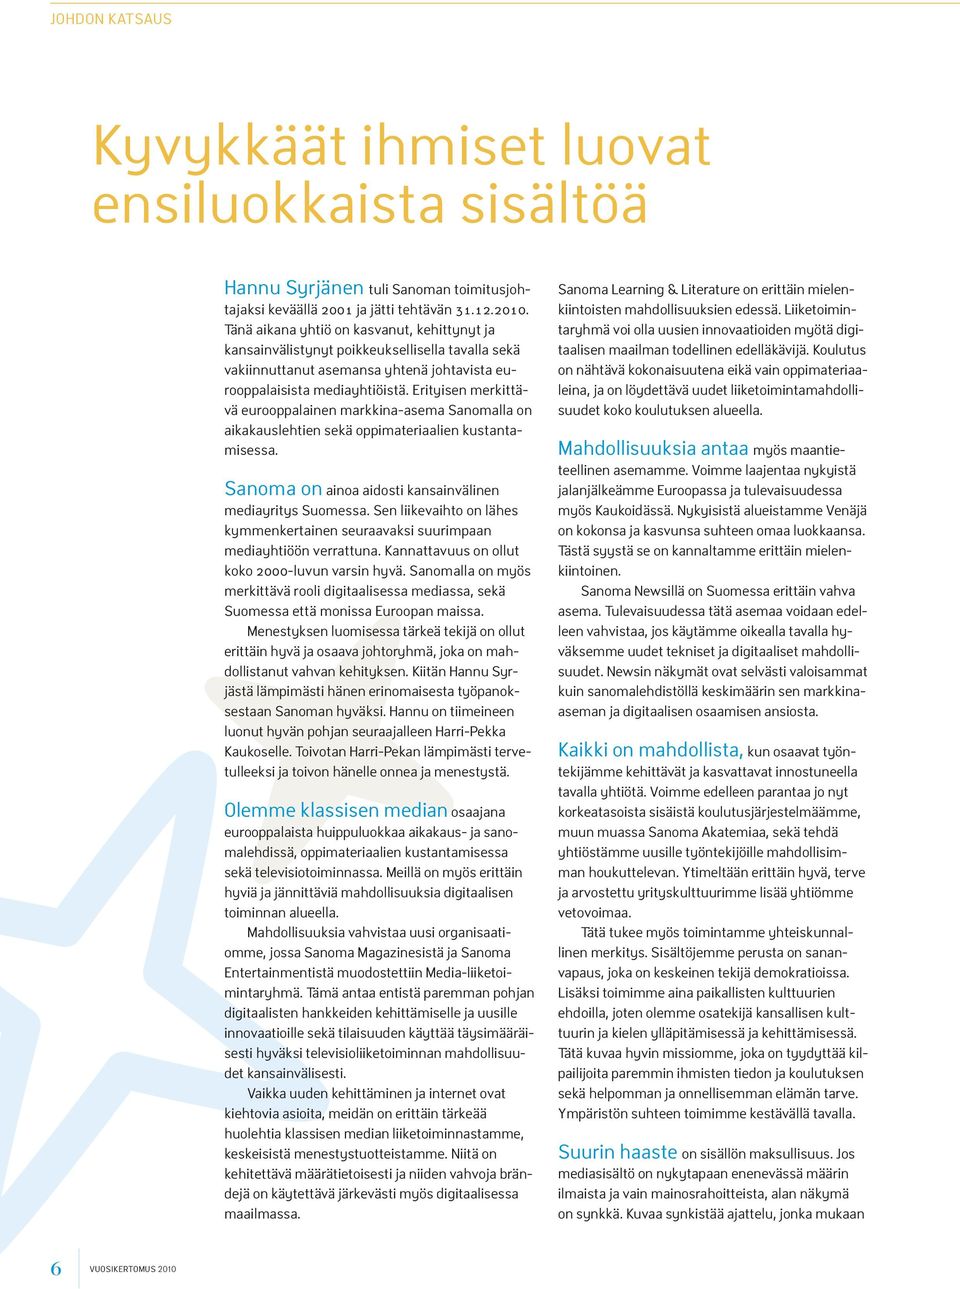 Erityisen merkittävä eurooppalainen markkina-asema Sanomalla on aikakauslehtien sekä oppimateriaalien kustantamisessa. Sanoma on ainoa aidosti kansainvälinen mediayritys Suomessa.